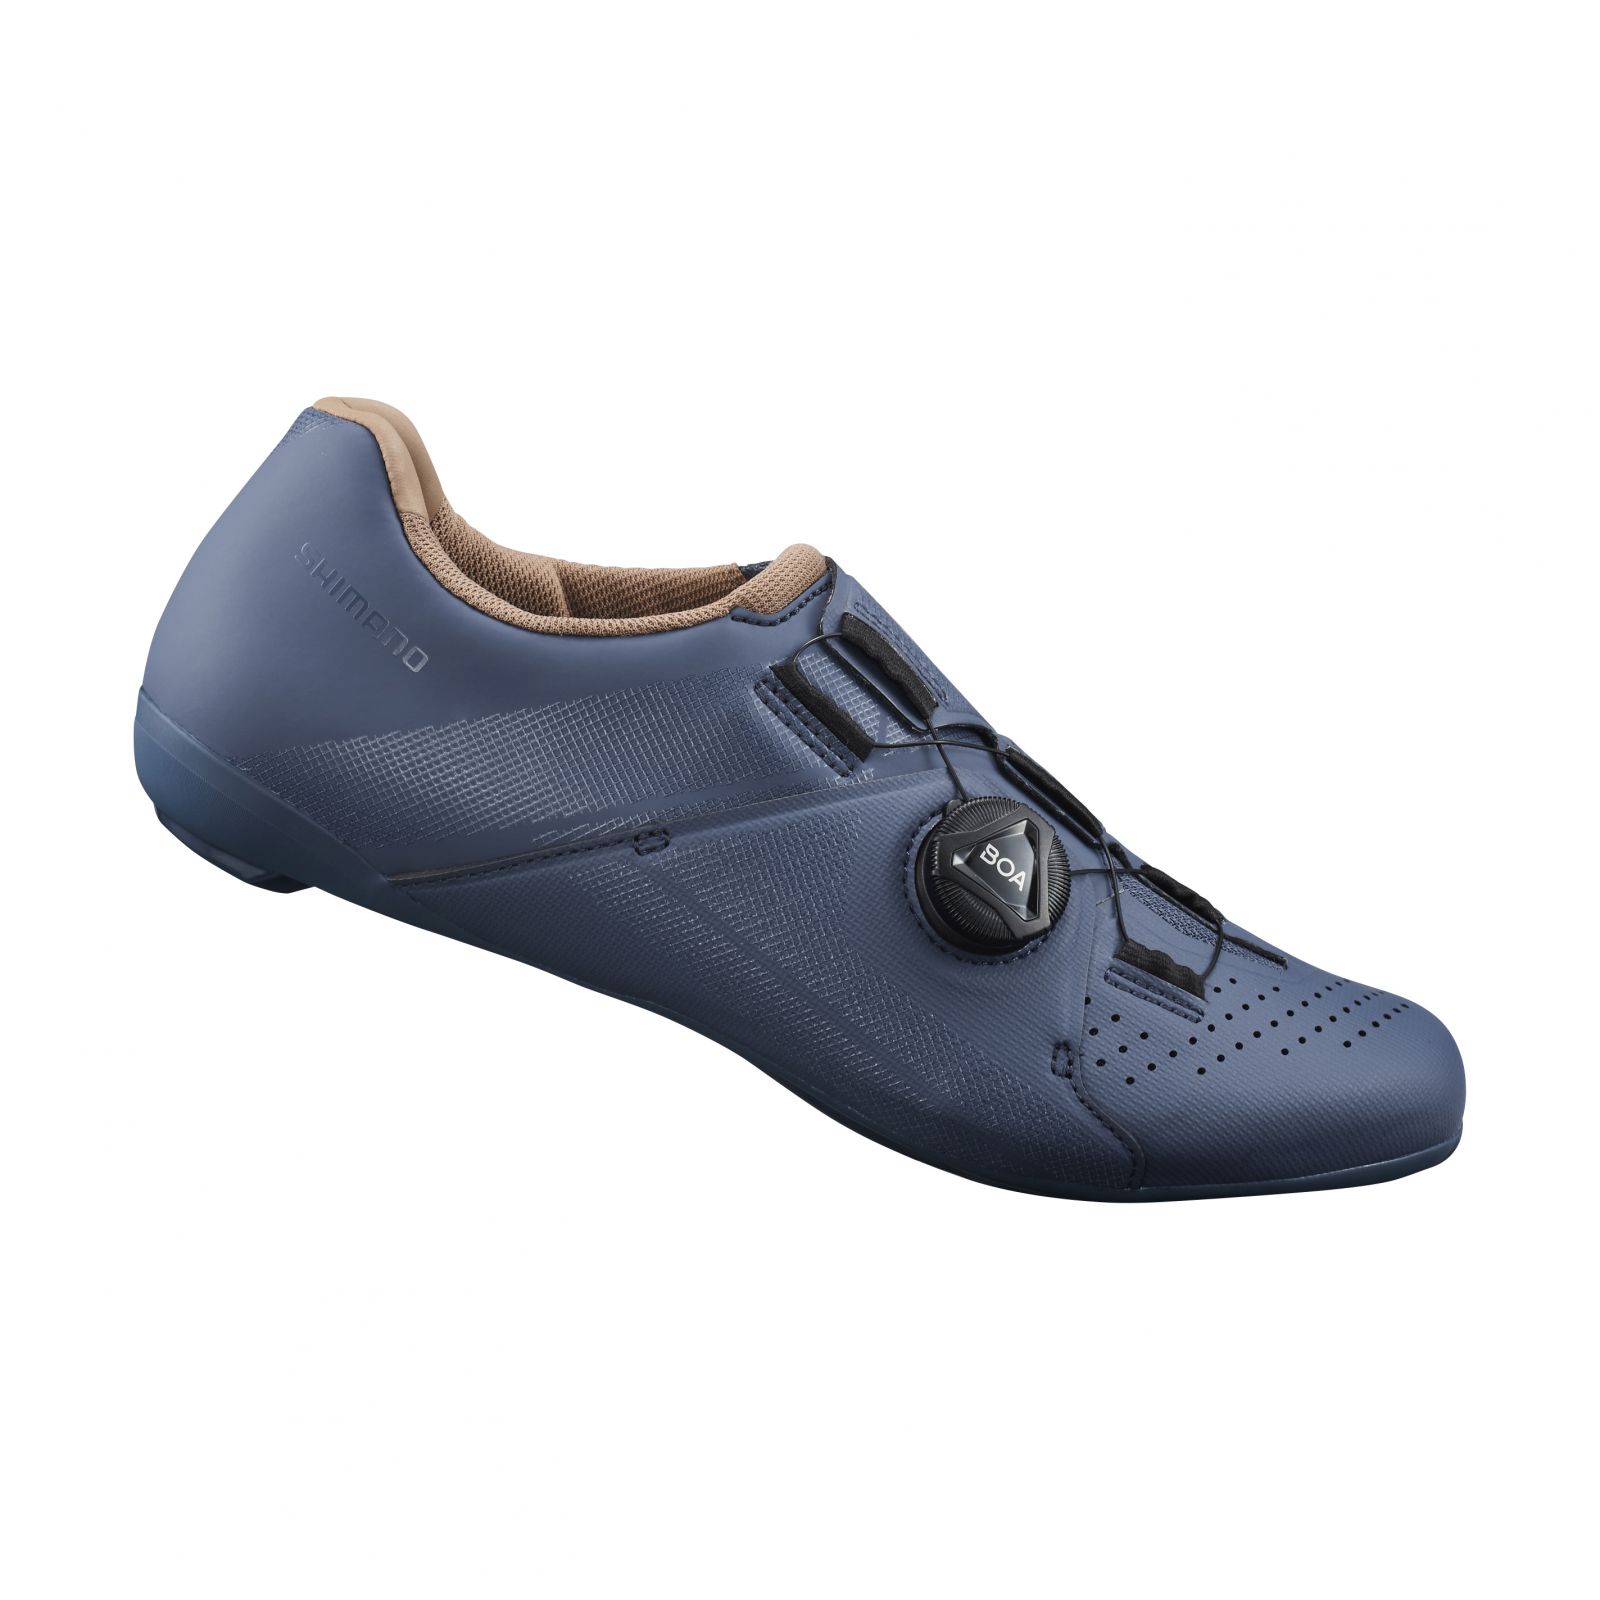 SHIMANO silniční obuv SH-RC300W, dámská, modrá indigo, 37